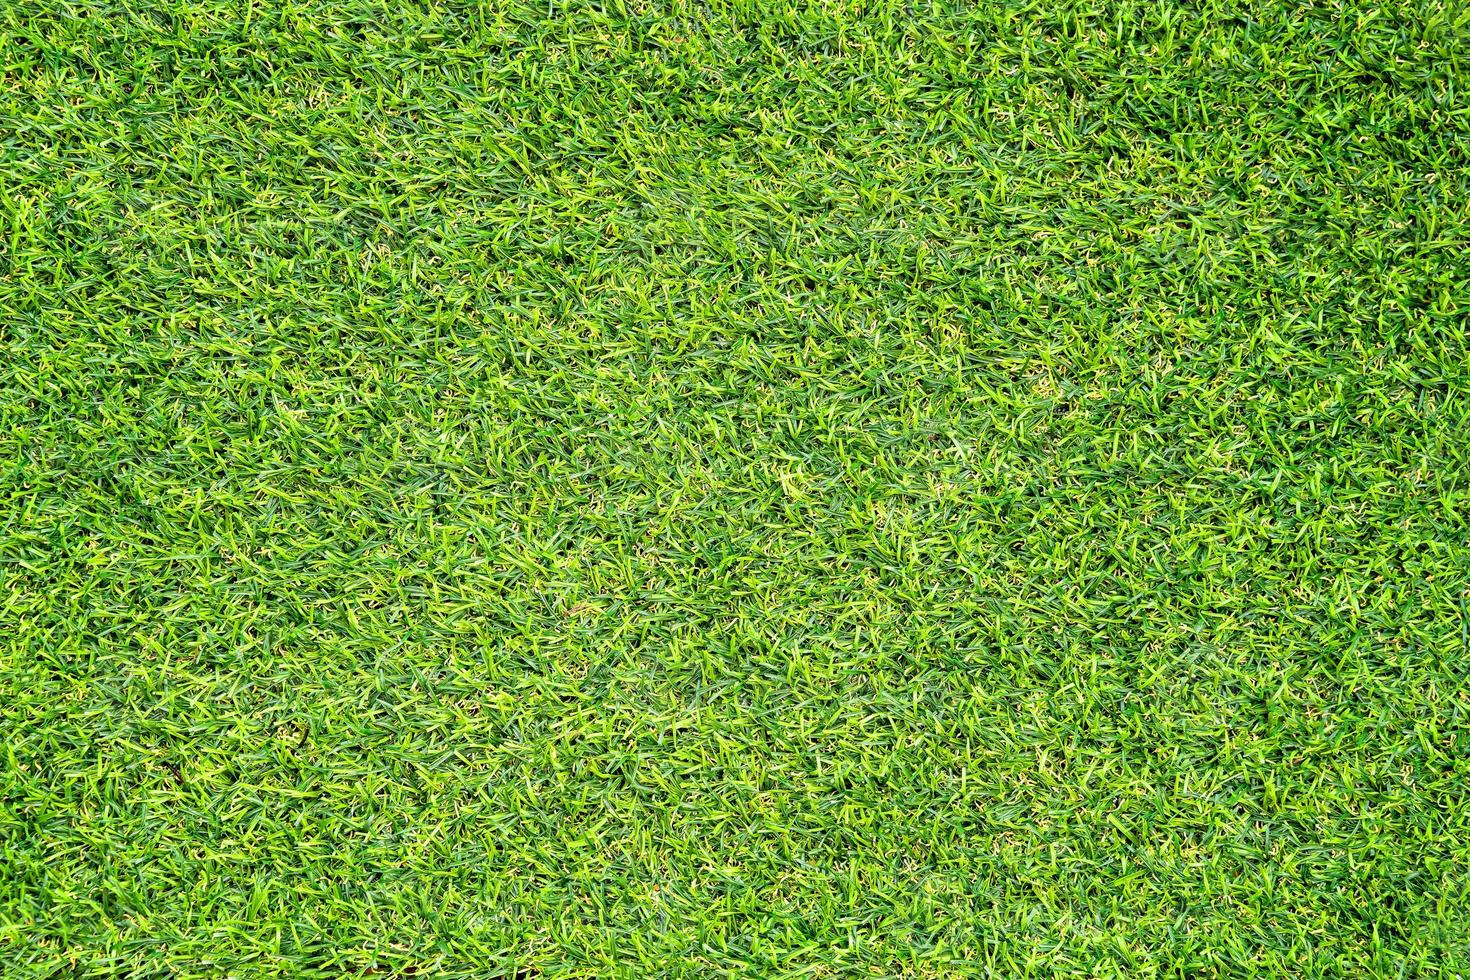 grünes Gras Textur für den Hintergrund. grünes Rasenmuster und Texturhintergrund. foto